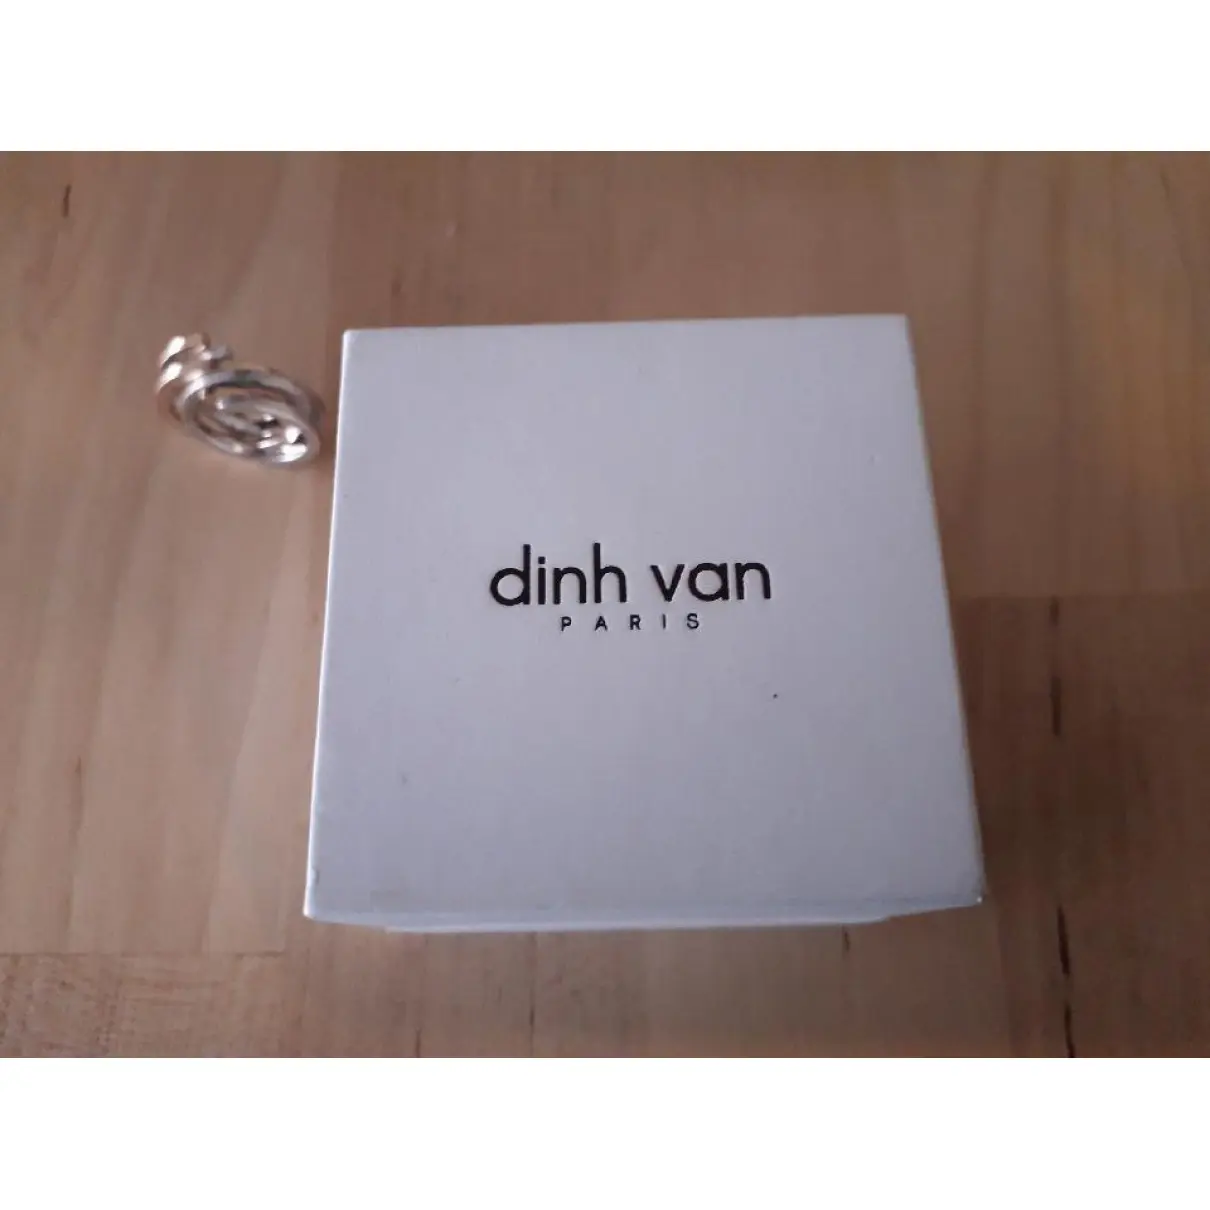 Buy Dinh Van Yellow gold ring online